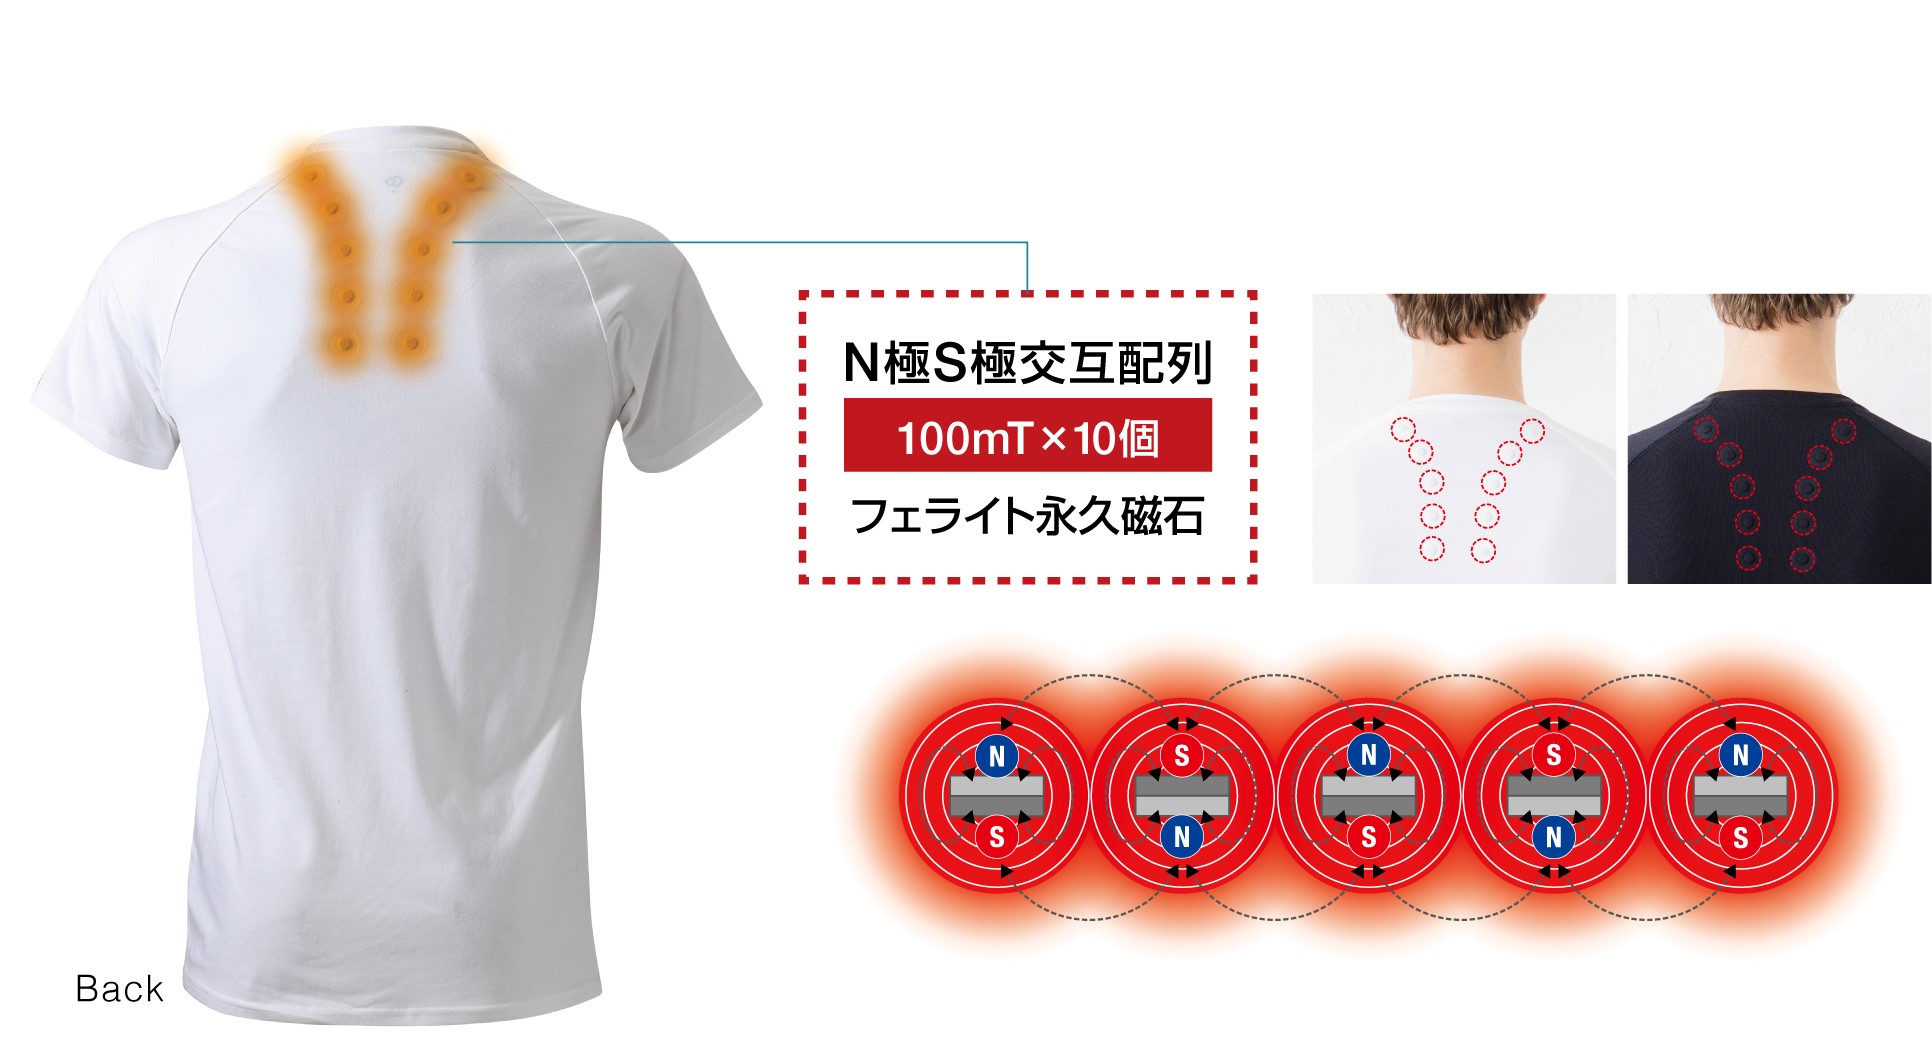 医療機器「コラントッテ レスノ マグケアシャツ Vネック T」4月28日より順次販売開始 | コラントッテのプレスリリース | 共同通信PRワイヤー